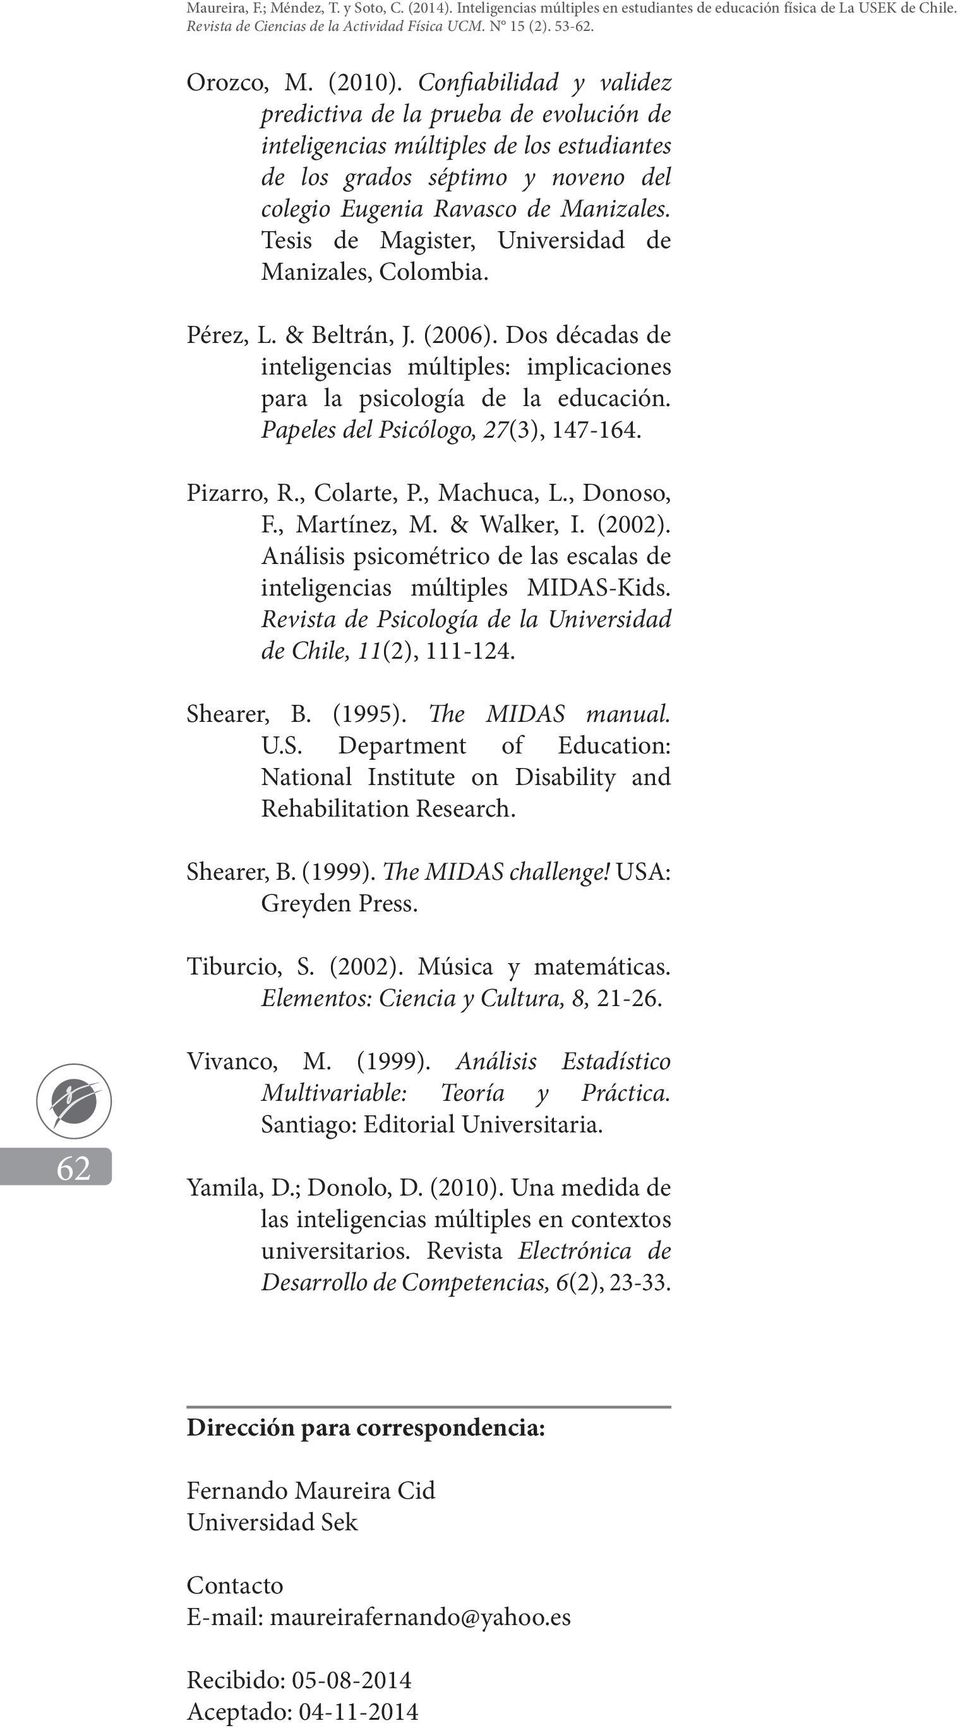 Papeles del Psicólogo, 27(3), 147-164. Pizarro, R., Colarte, P., Machuca, L., Donoso, F., Martínez, M. & Walker, I. (2002). Análisis psicométrico de las escalas de inteligencias múltiples MIDAS-Kids.